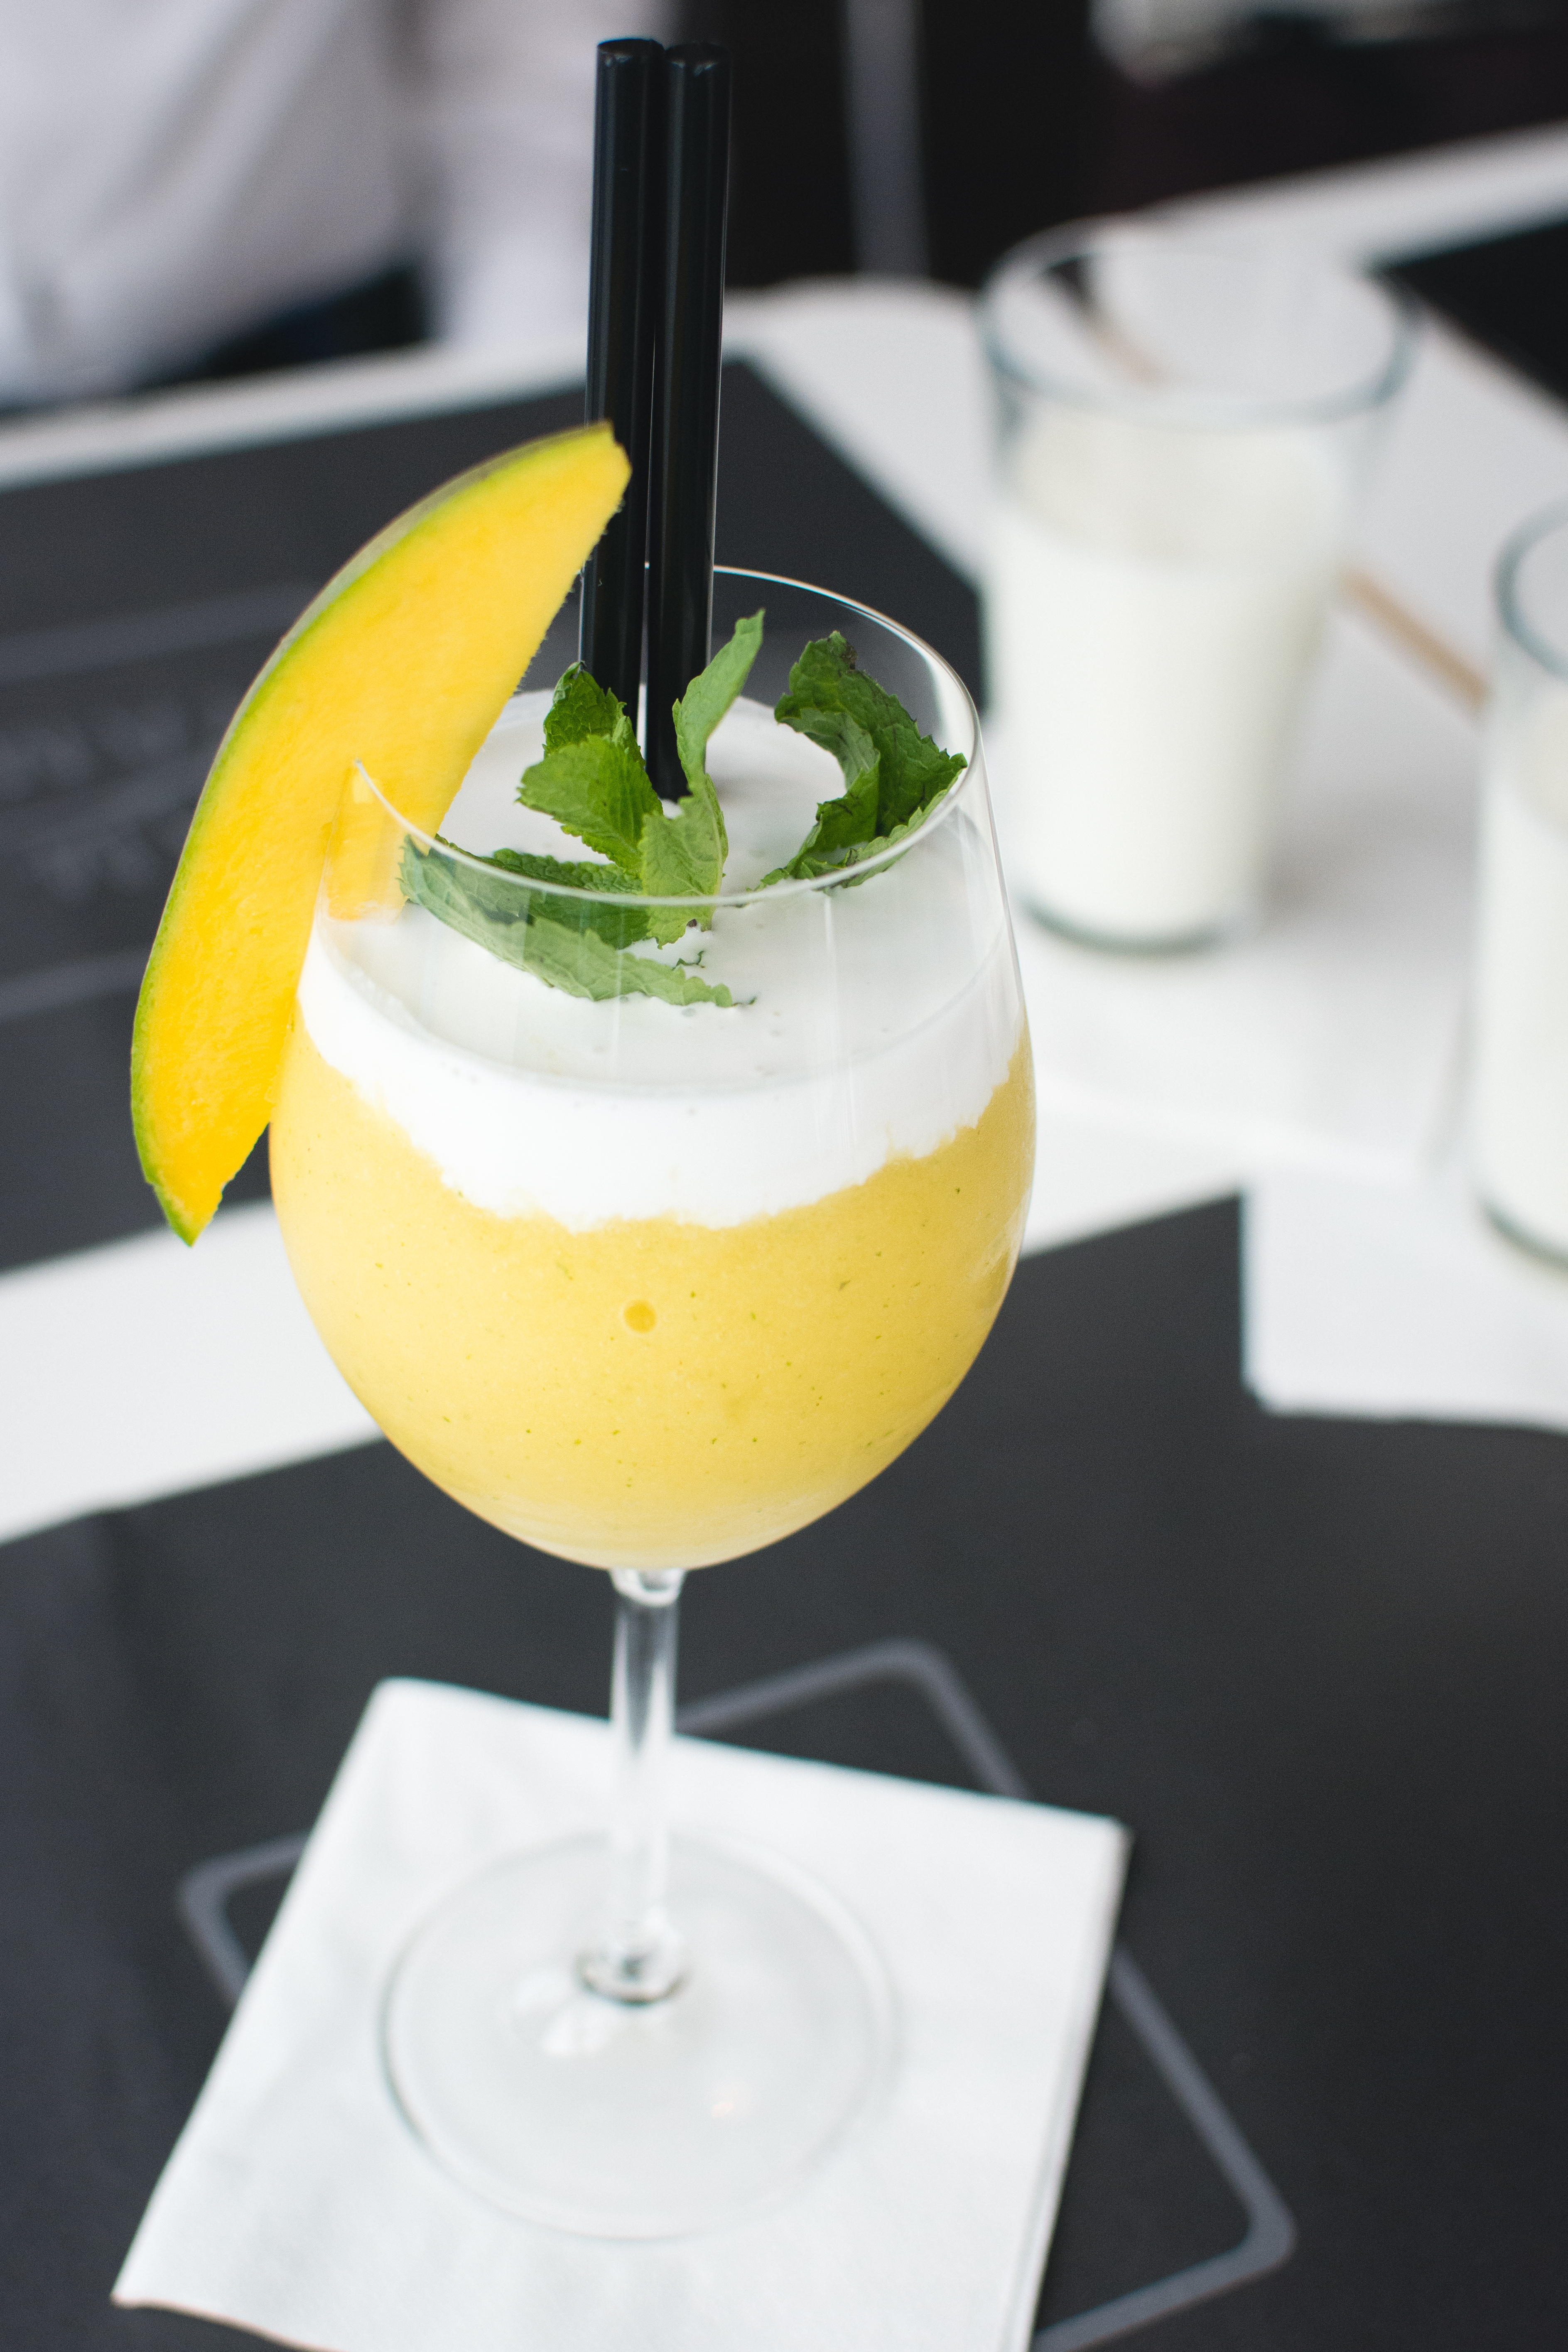 Frozen mango drink in a restaurant by Jakub Kapusnak